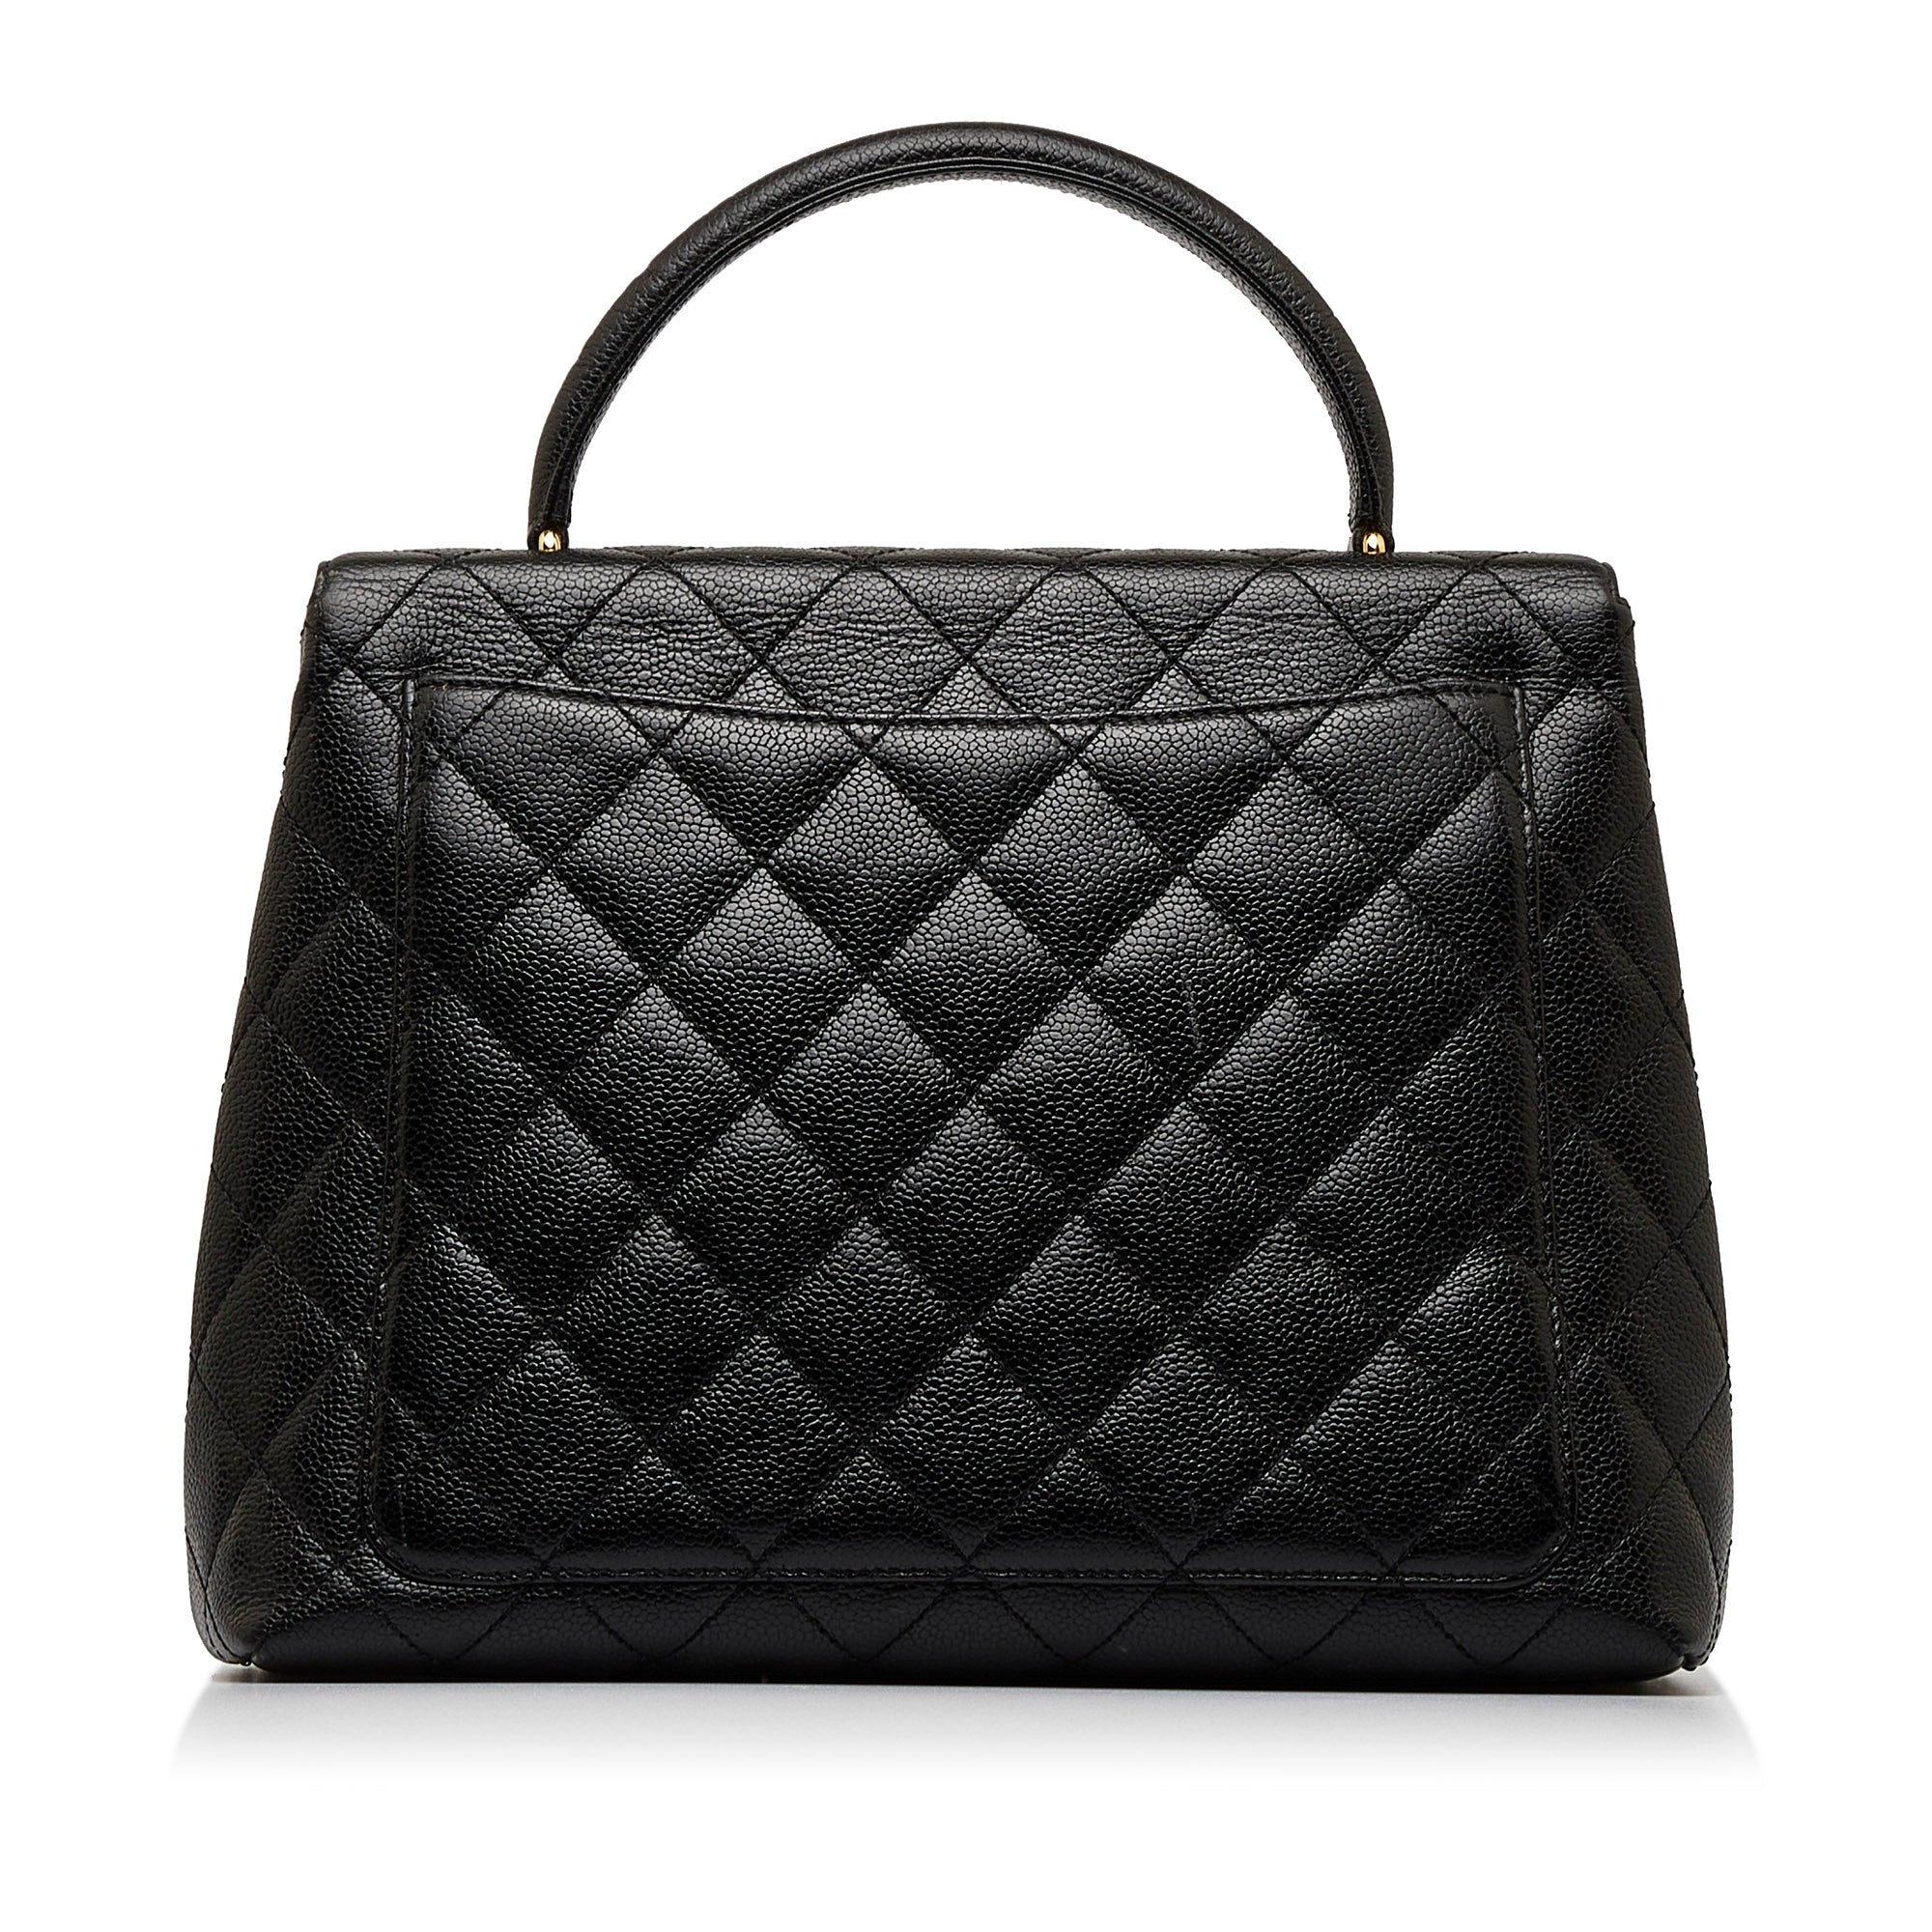 Black Chanel Caviar Kelly Top Handle Handbag – Designer Revival